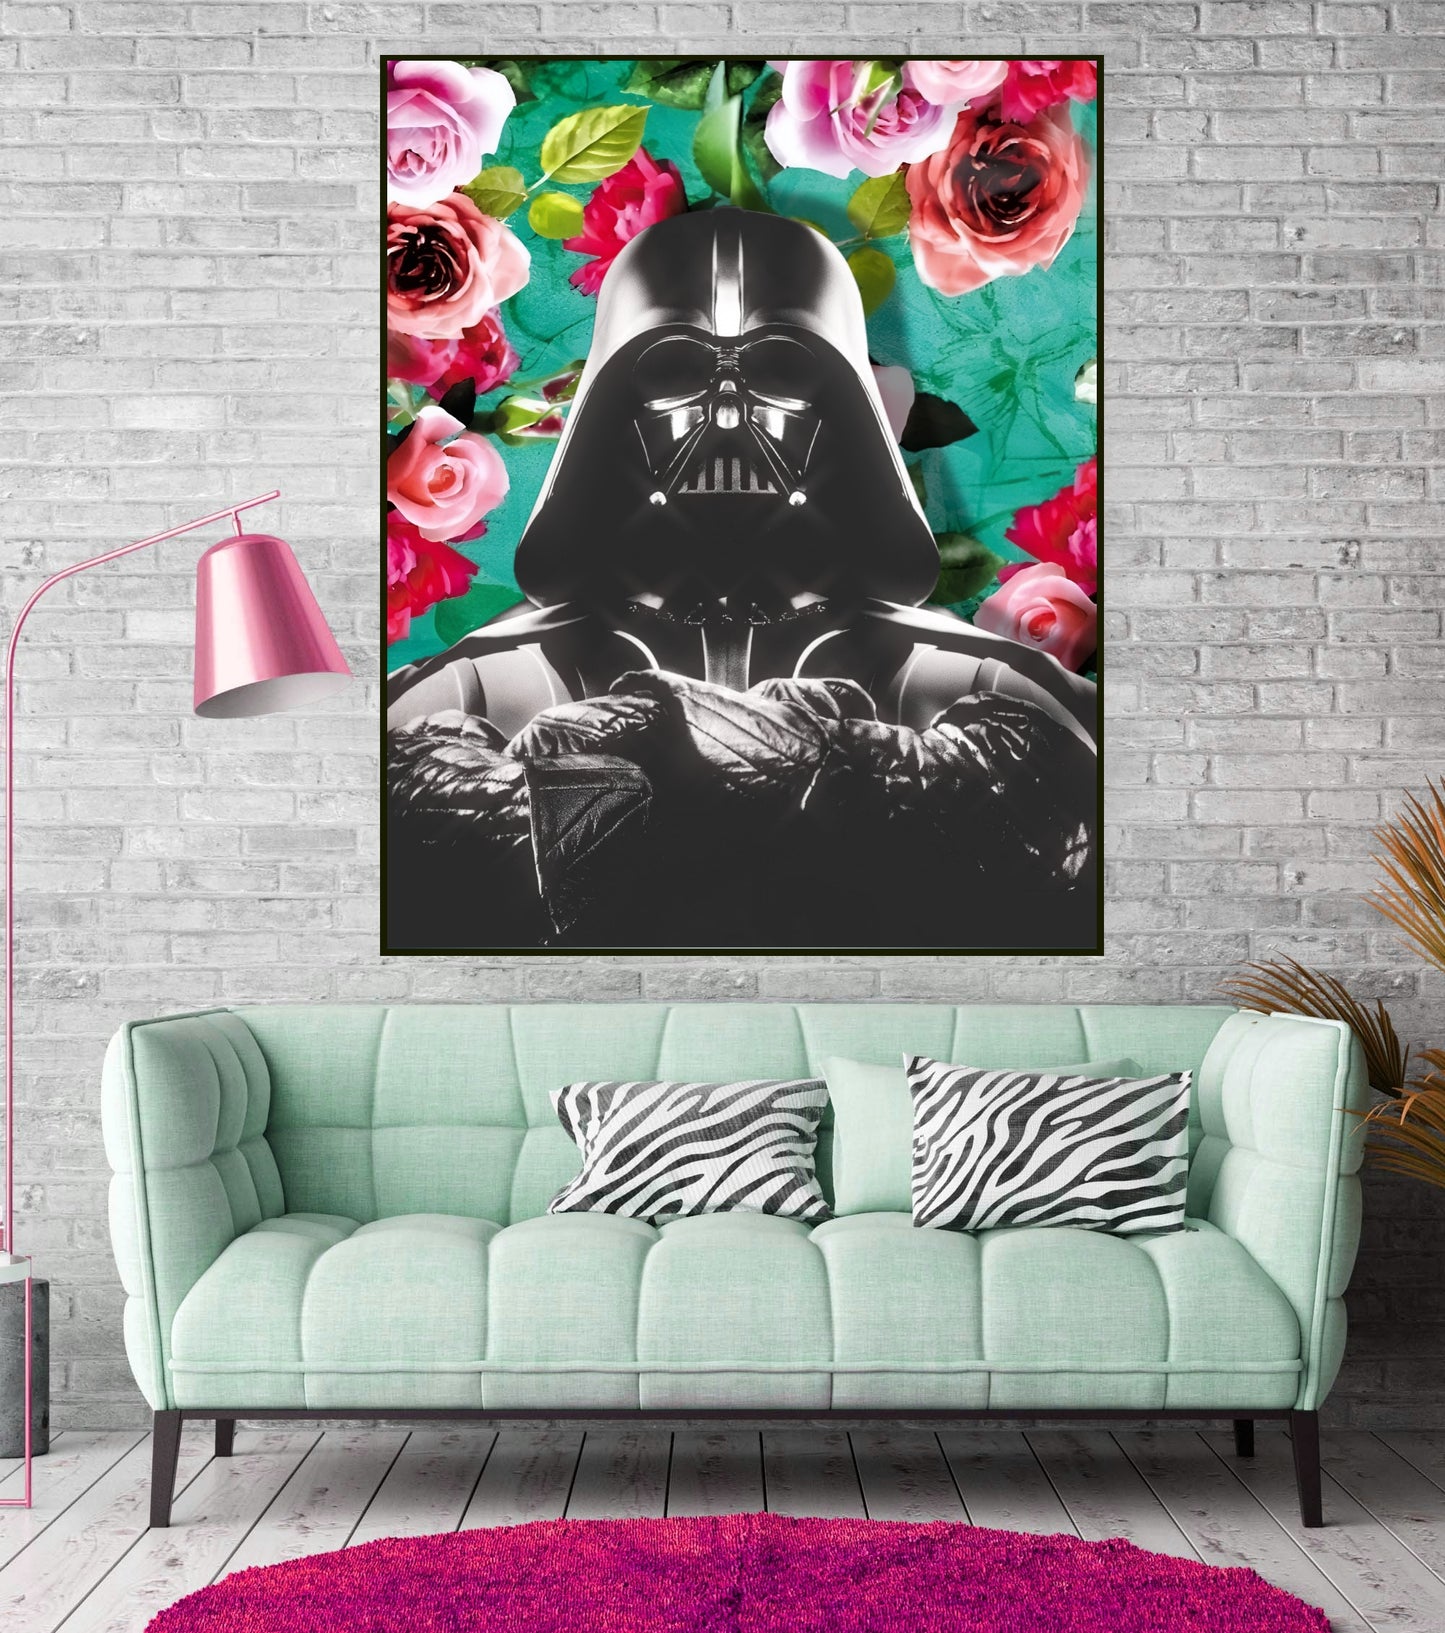 Princess Leia and Darth Vader Floral Wall Art Set | Lisa Jaye Art Designs